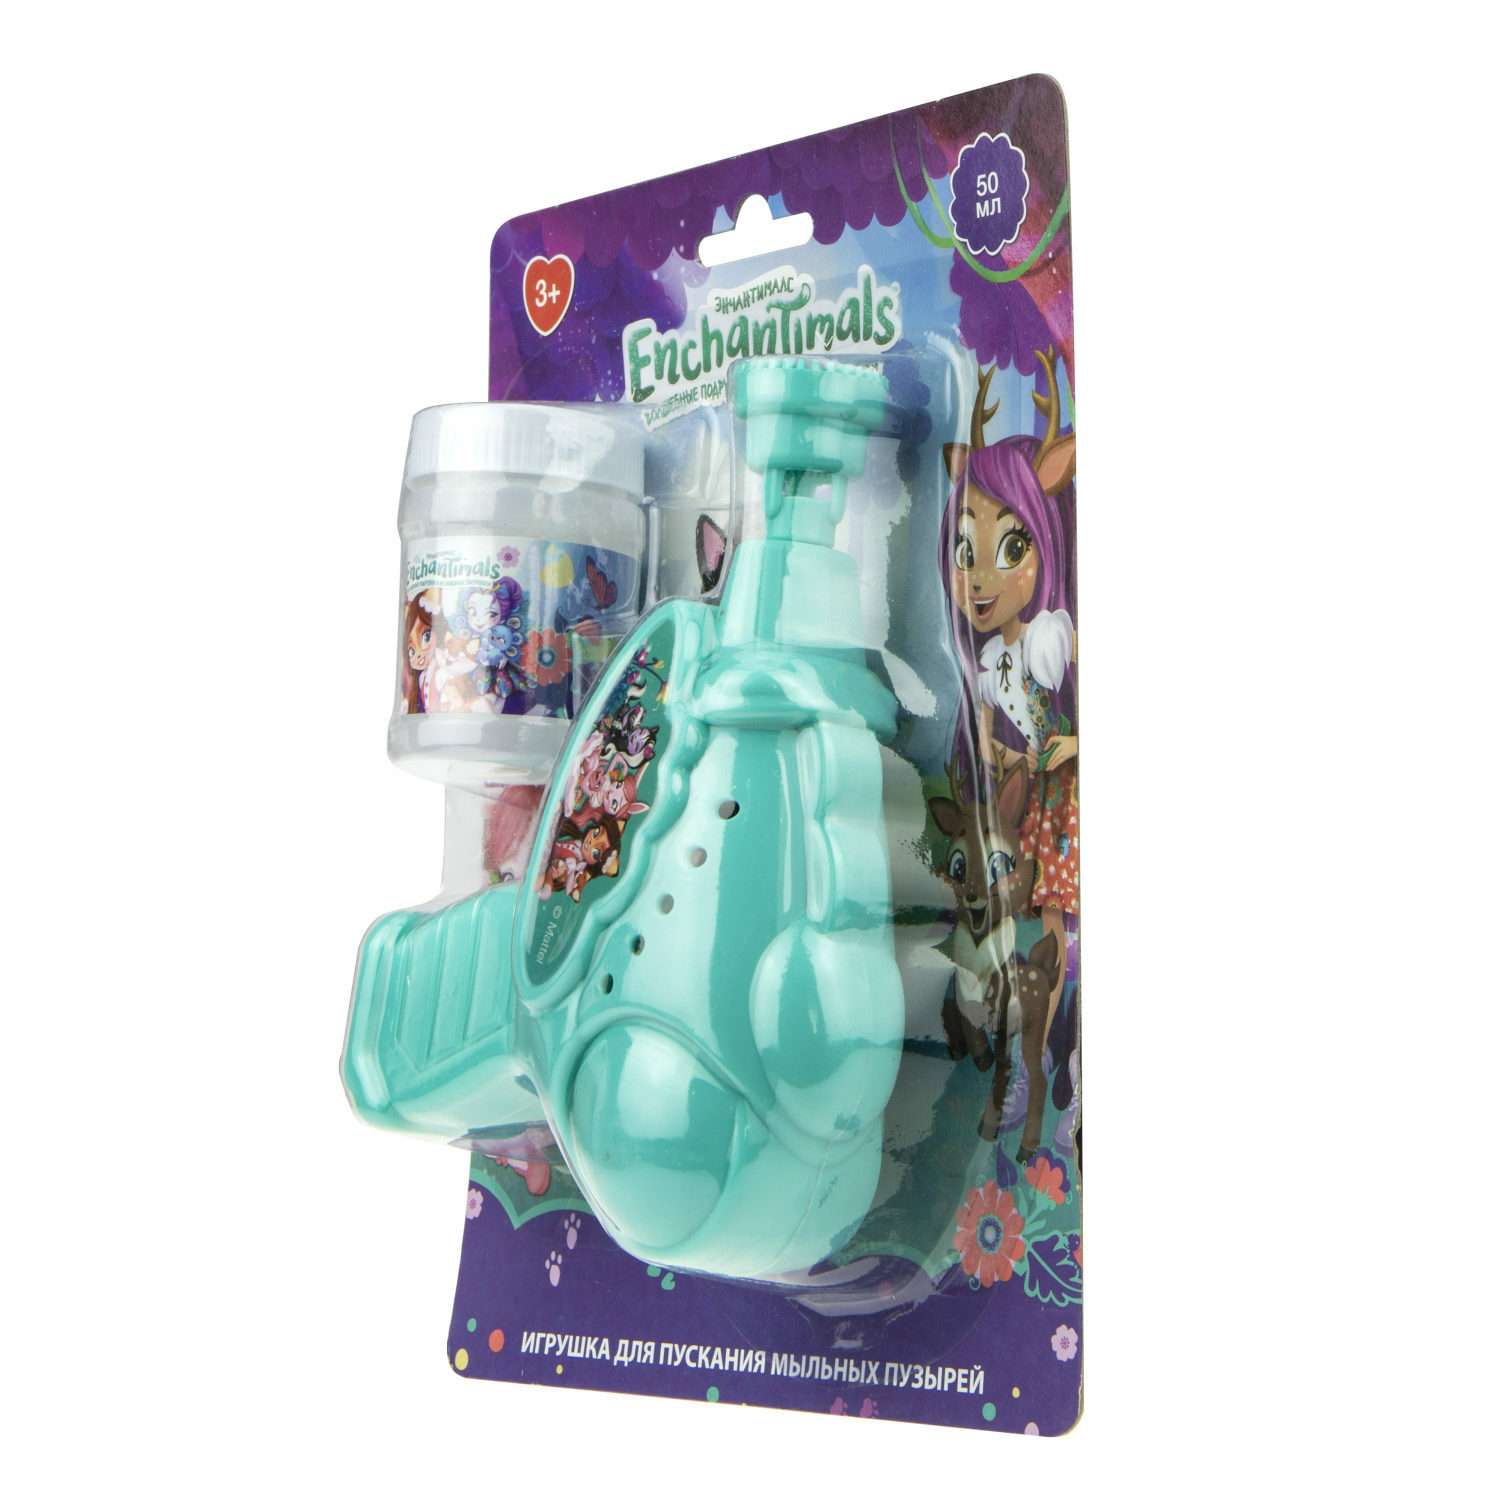 Генератор мыльных пузырей Enchantimals 1YOY с раствором пистолет бластер аппарат детские игрушки для улицы и дома для девочек - фото 5